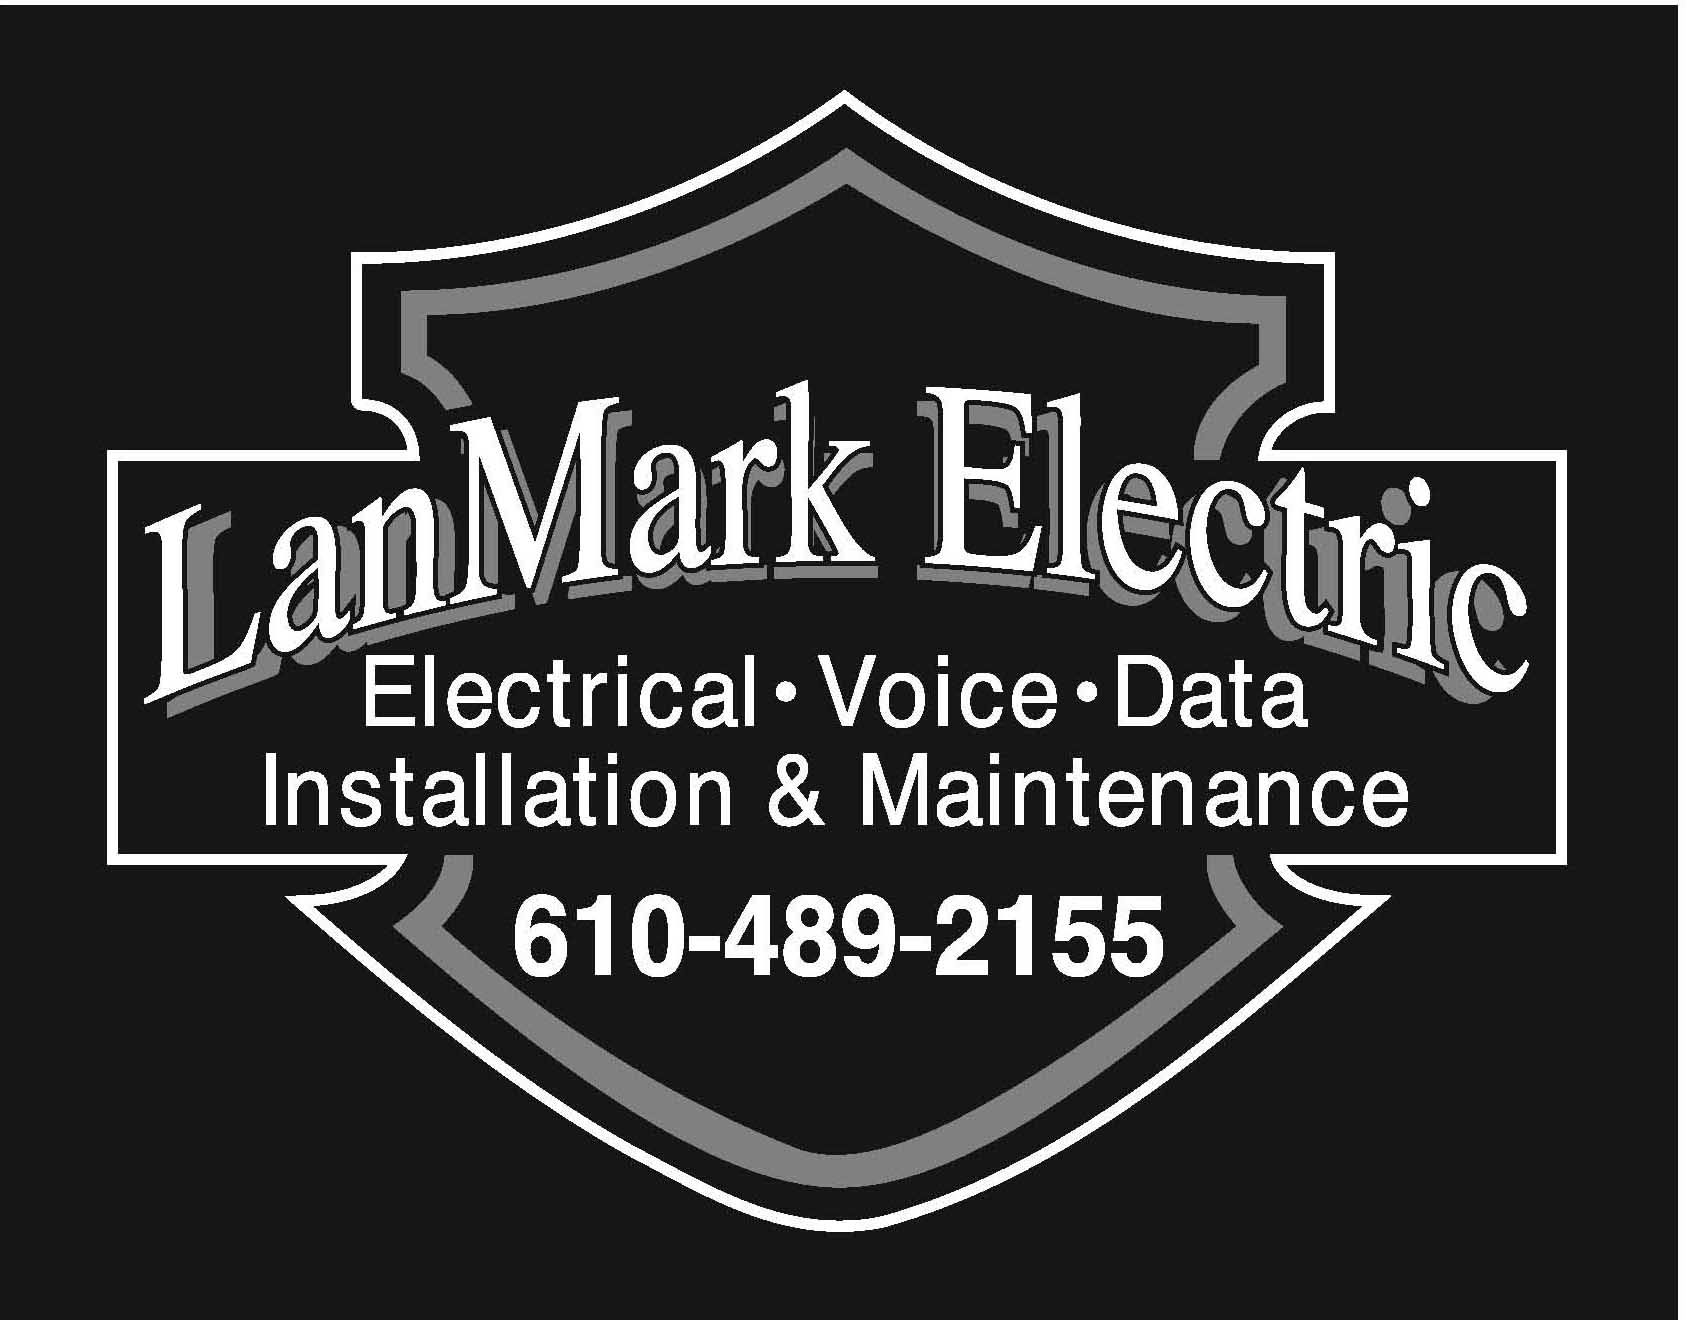 LanMark Electric